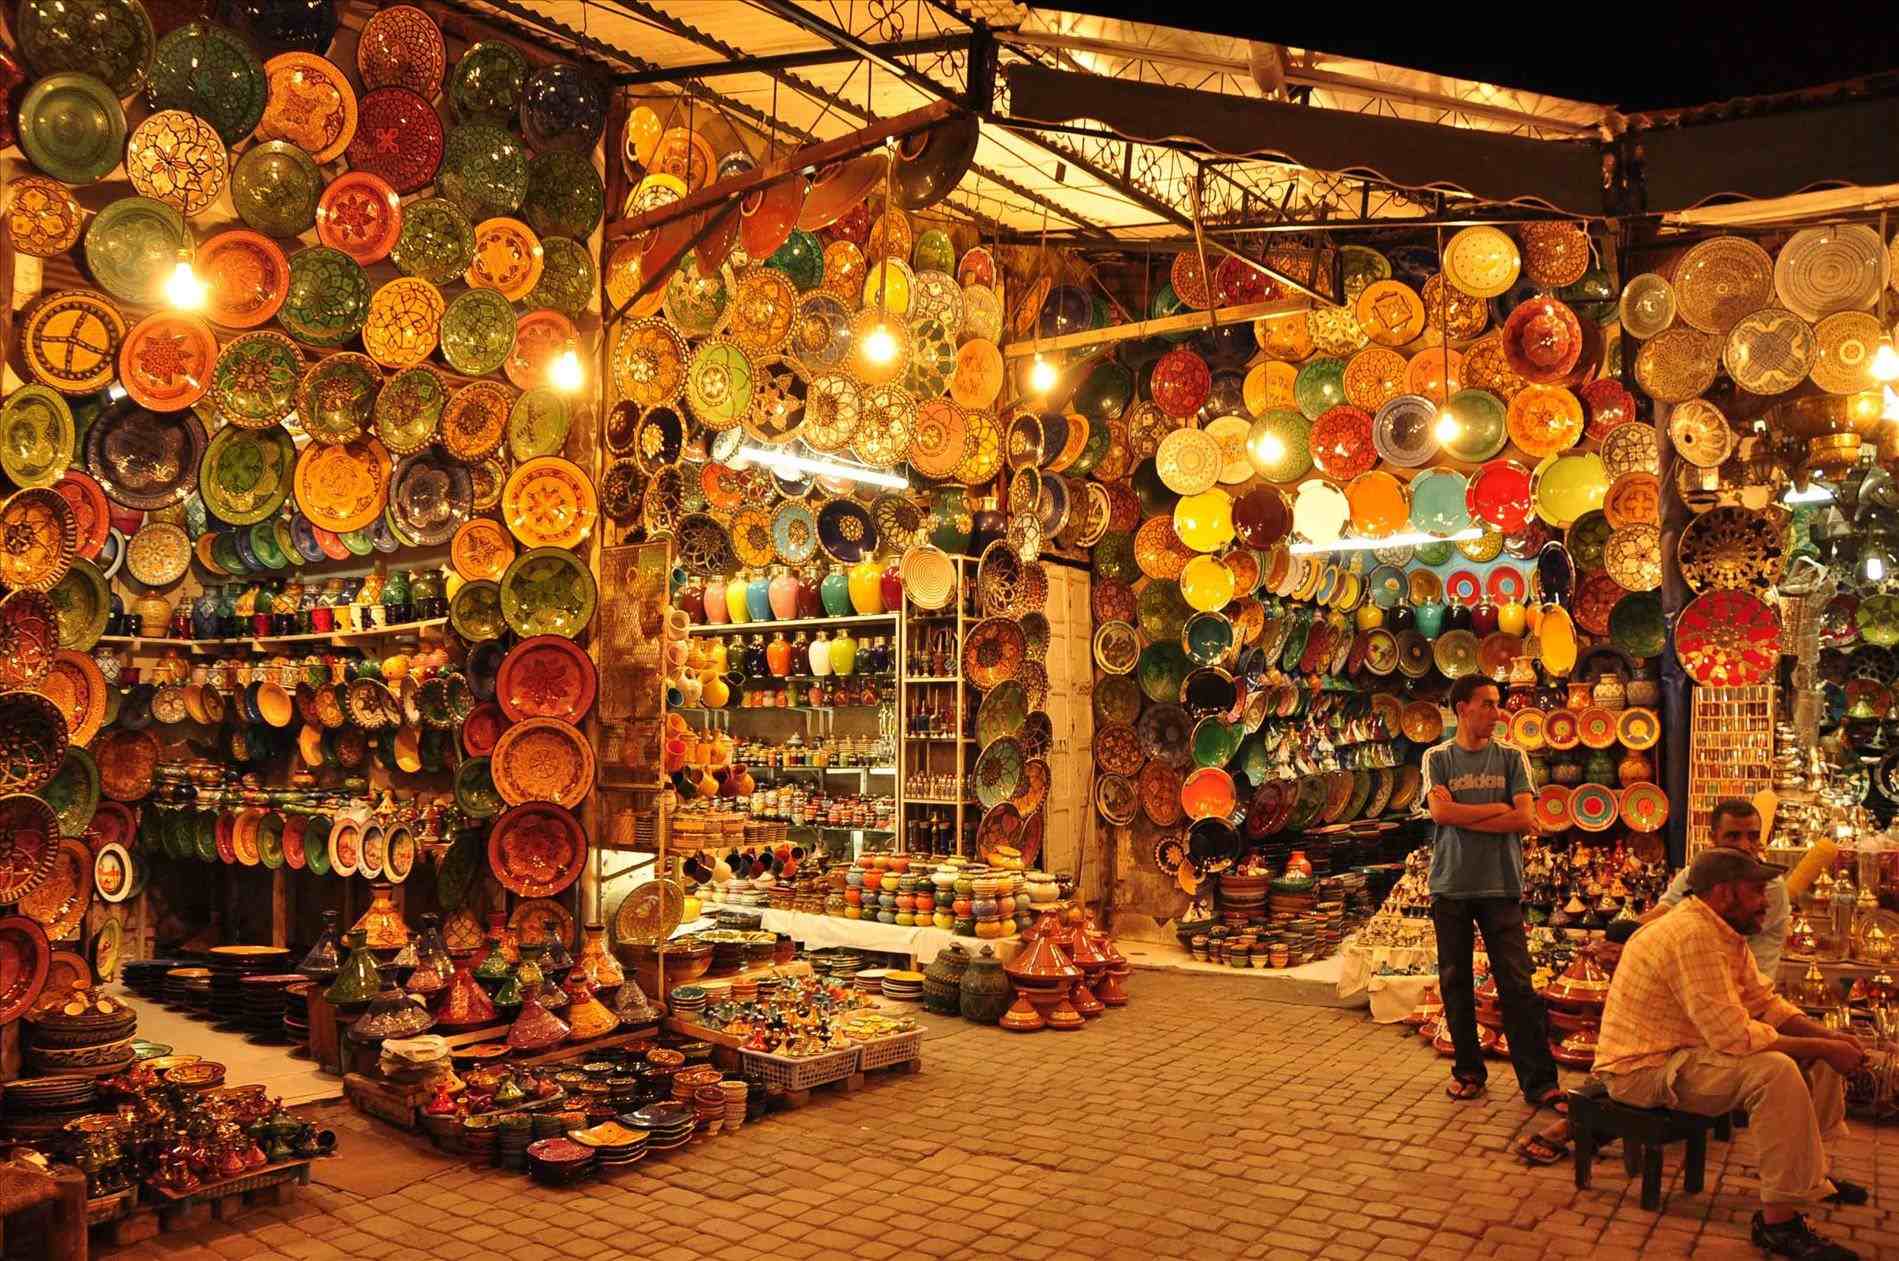 Moroccan Outdoor Market 2018 - publizzity.com